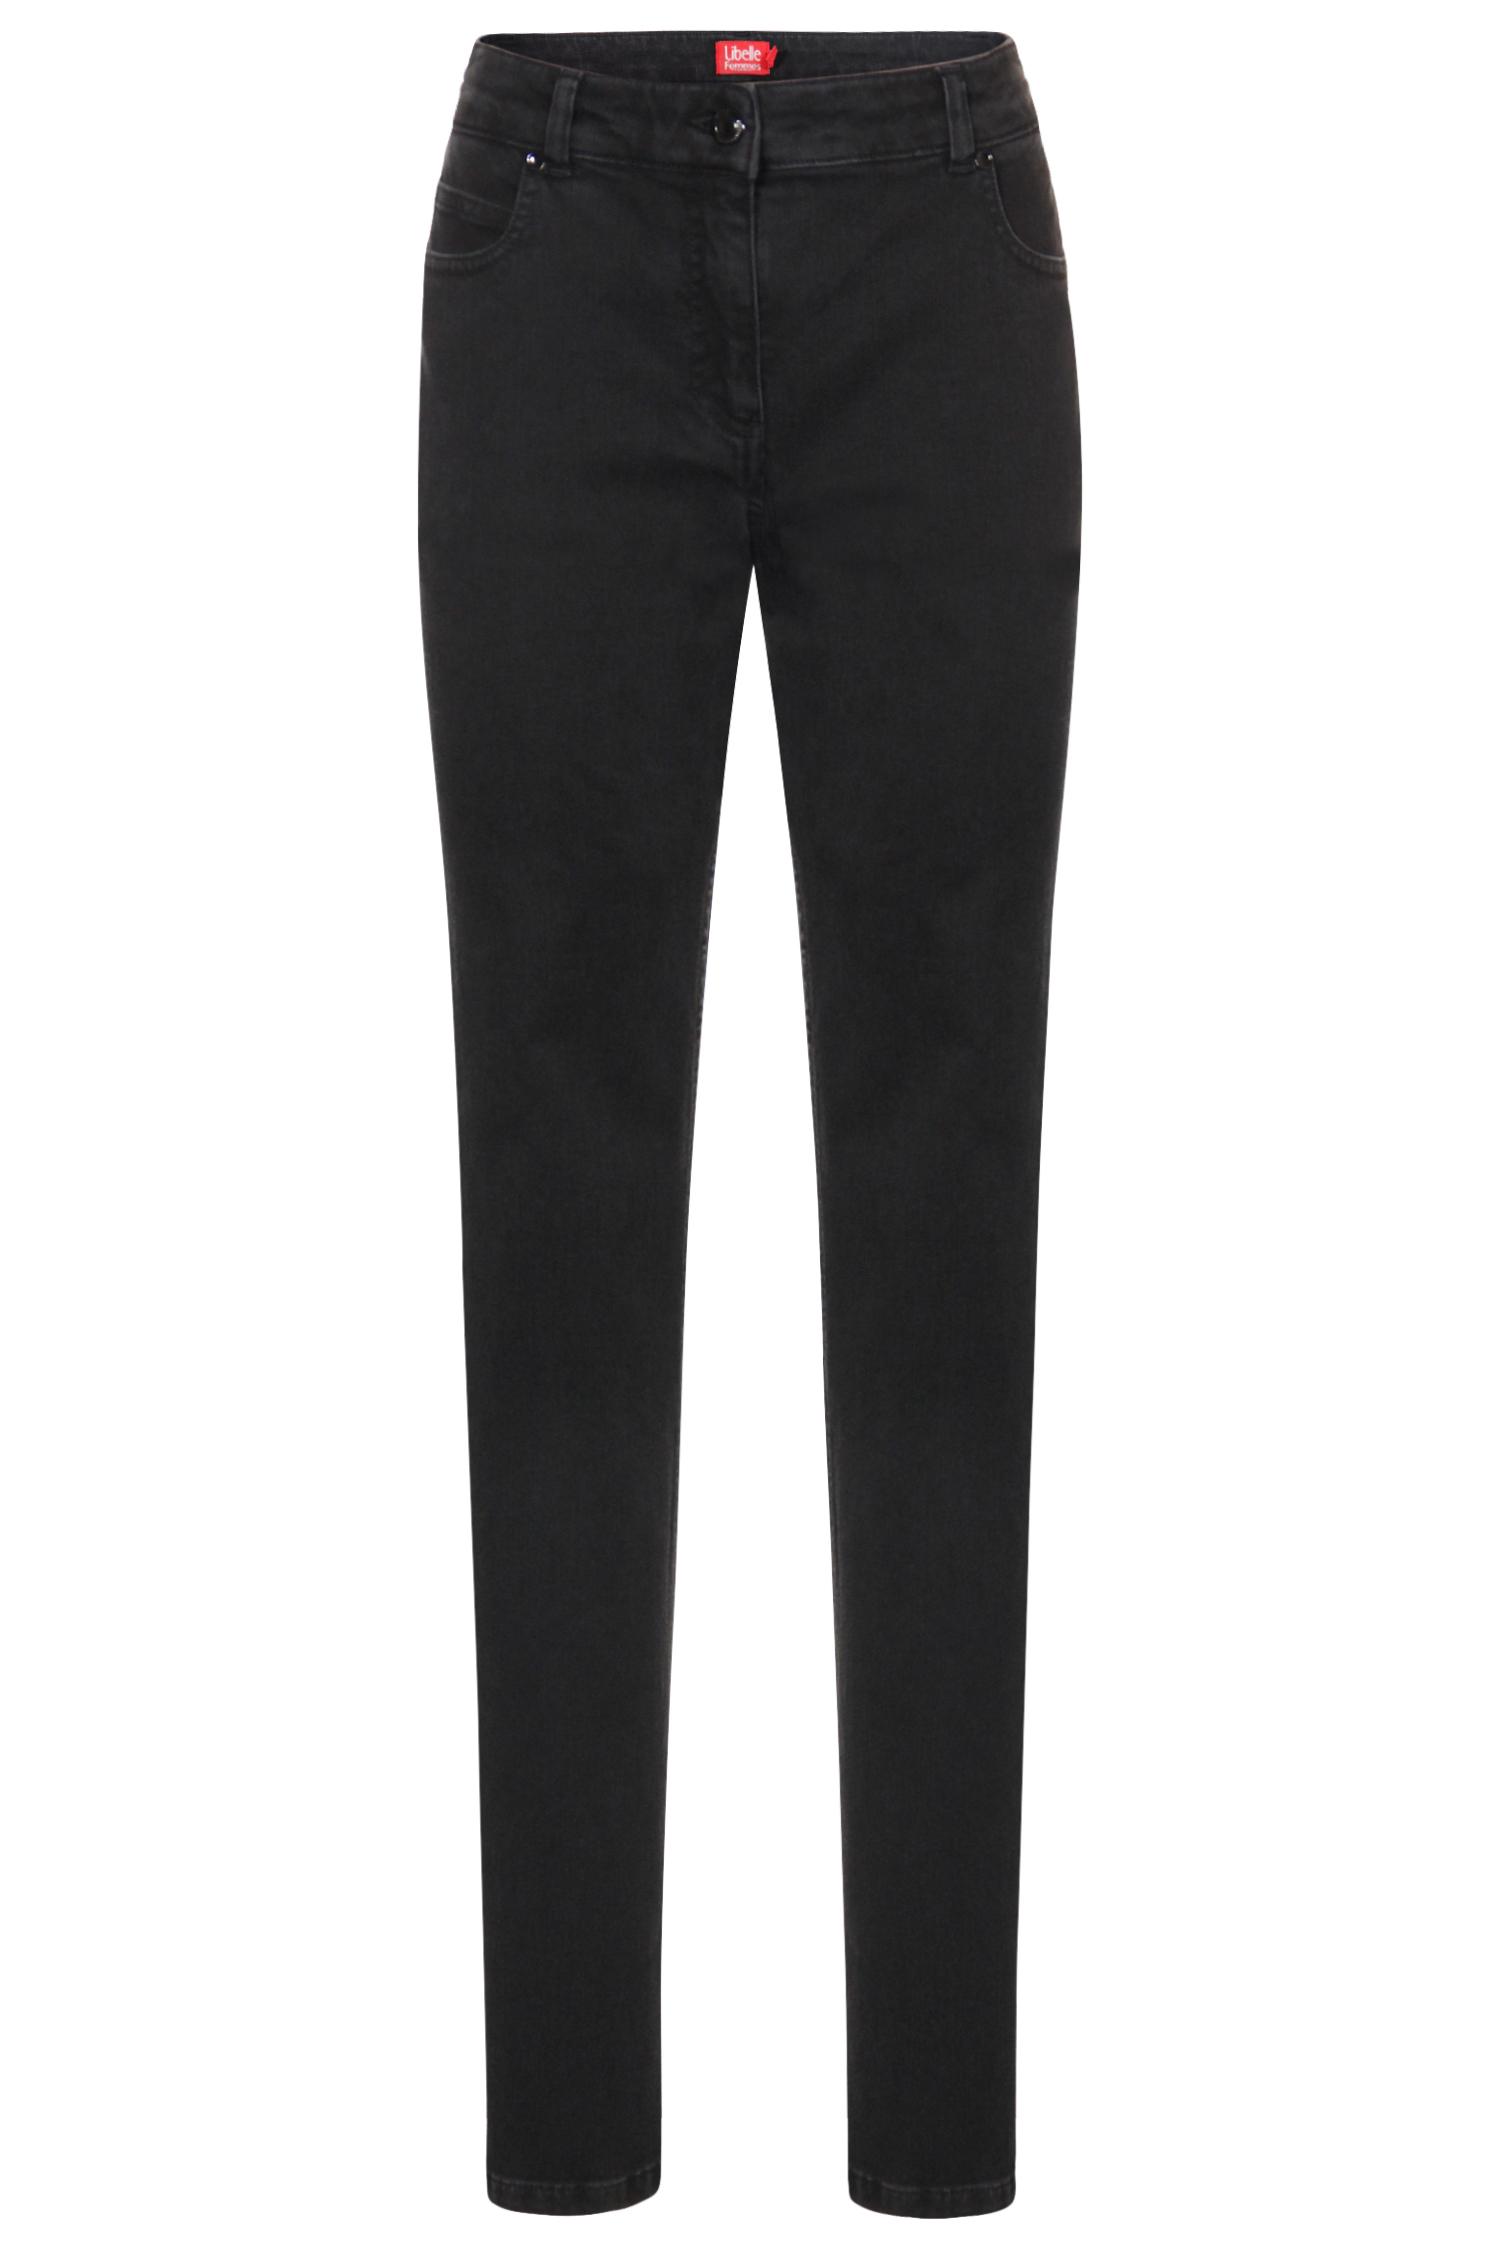 Pantalon noir - 49,95 €